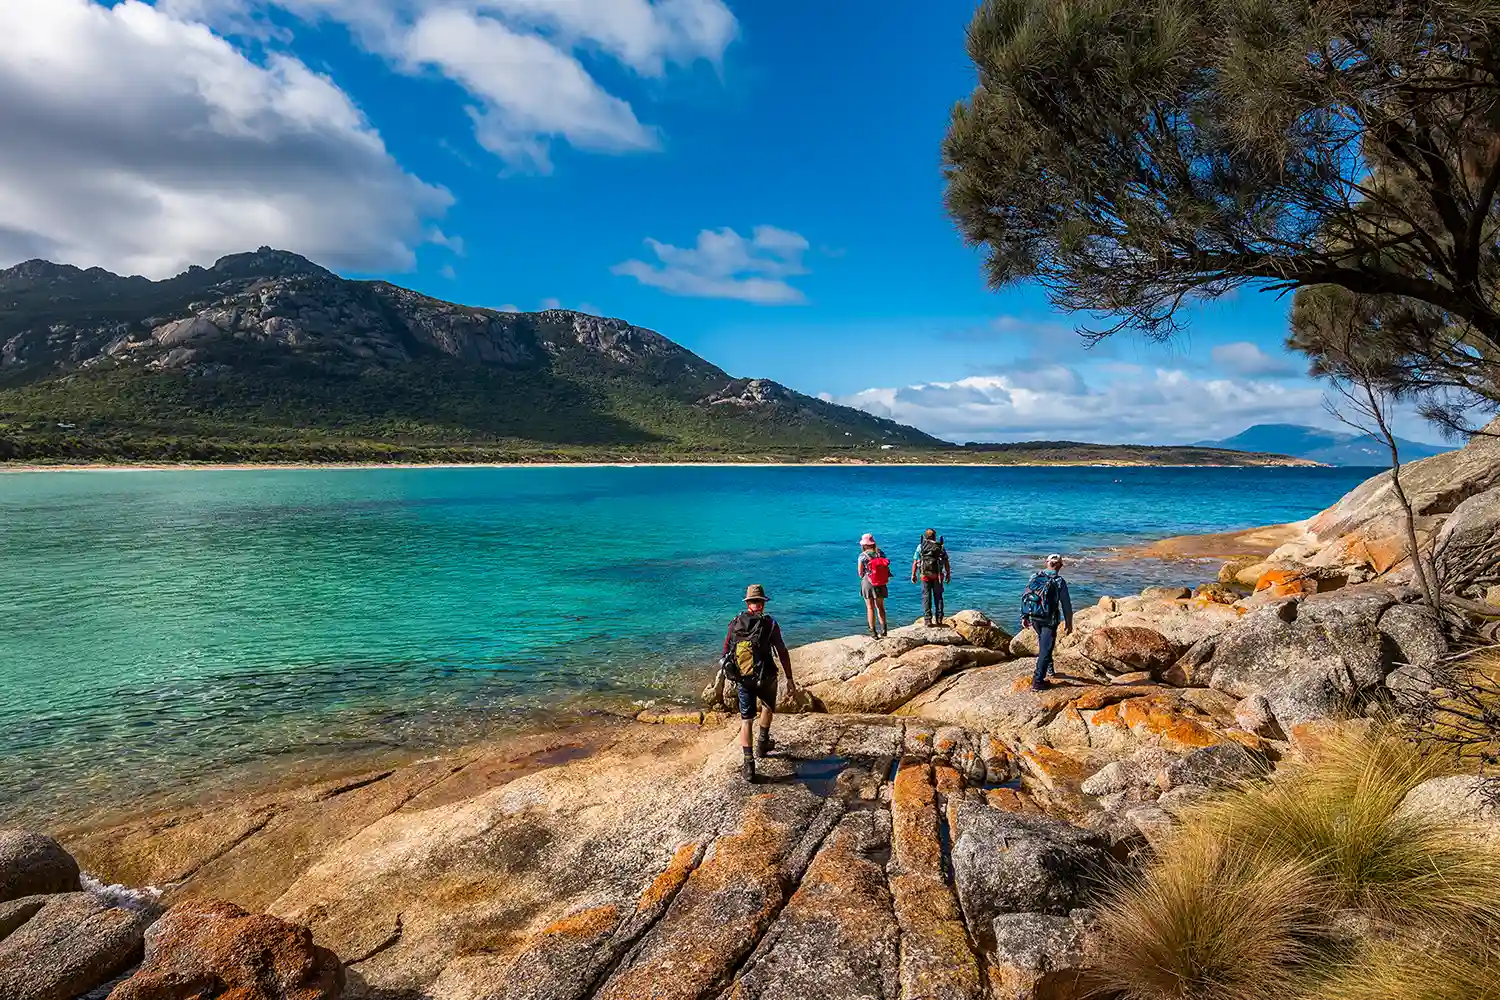 Tasmania impressionante: escursioni come in paradiso